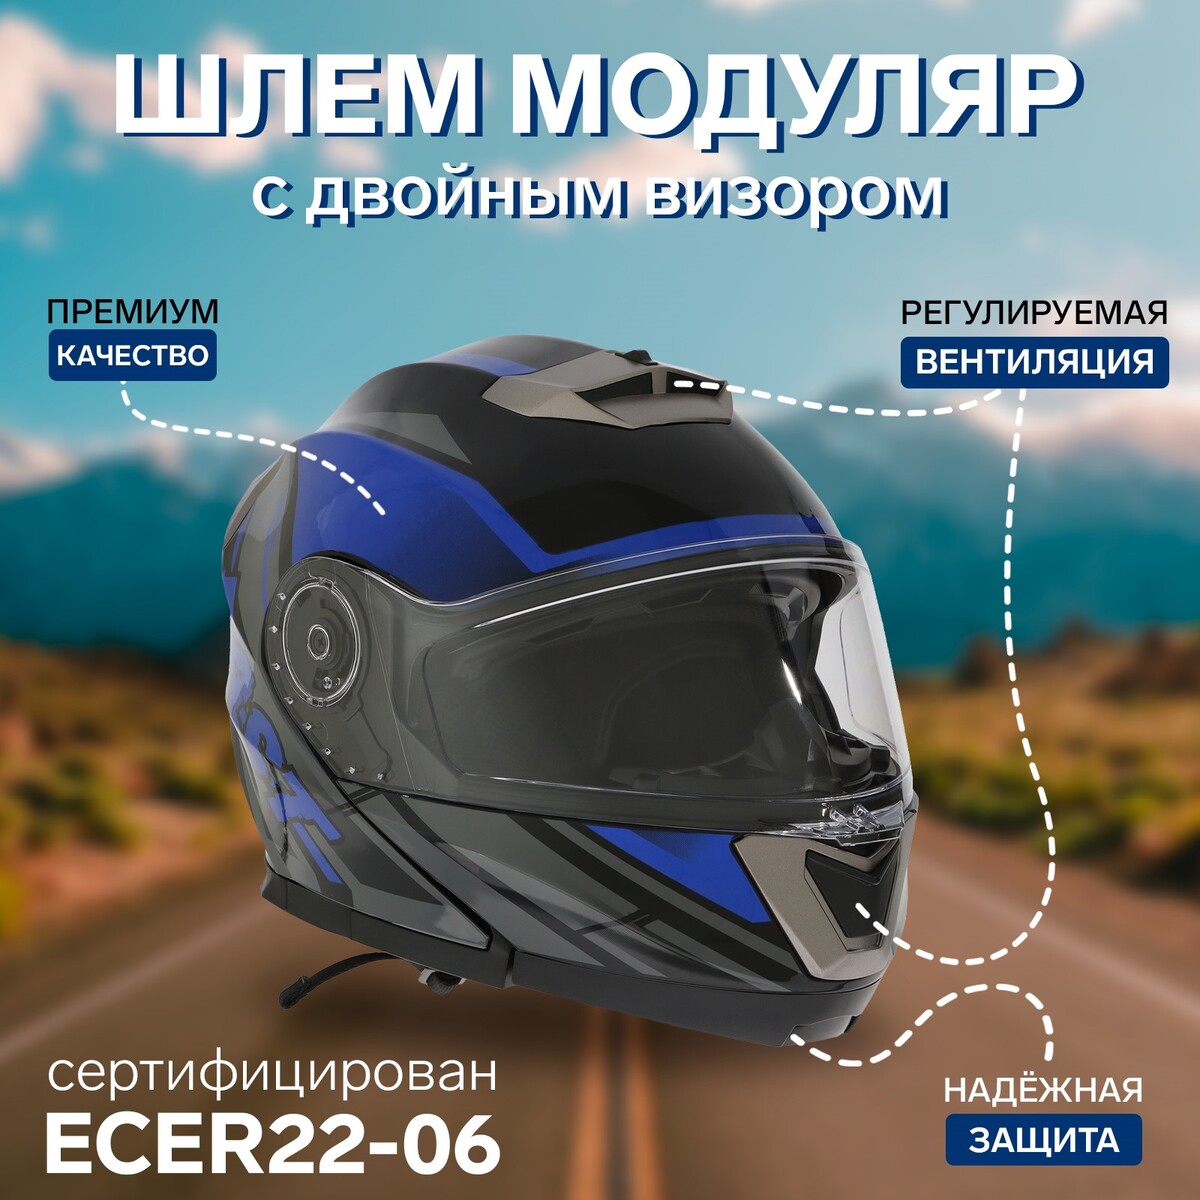 Шлем модуляр с двумя визорами, размер xxl (61), модель - bld-160e, черно-синий комплект защиты детский city ride шлем размер универсальный jb0211561